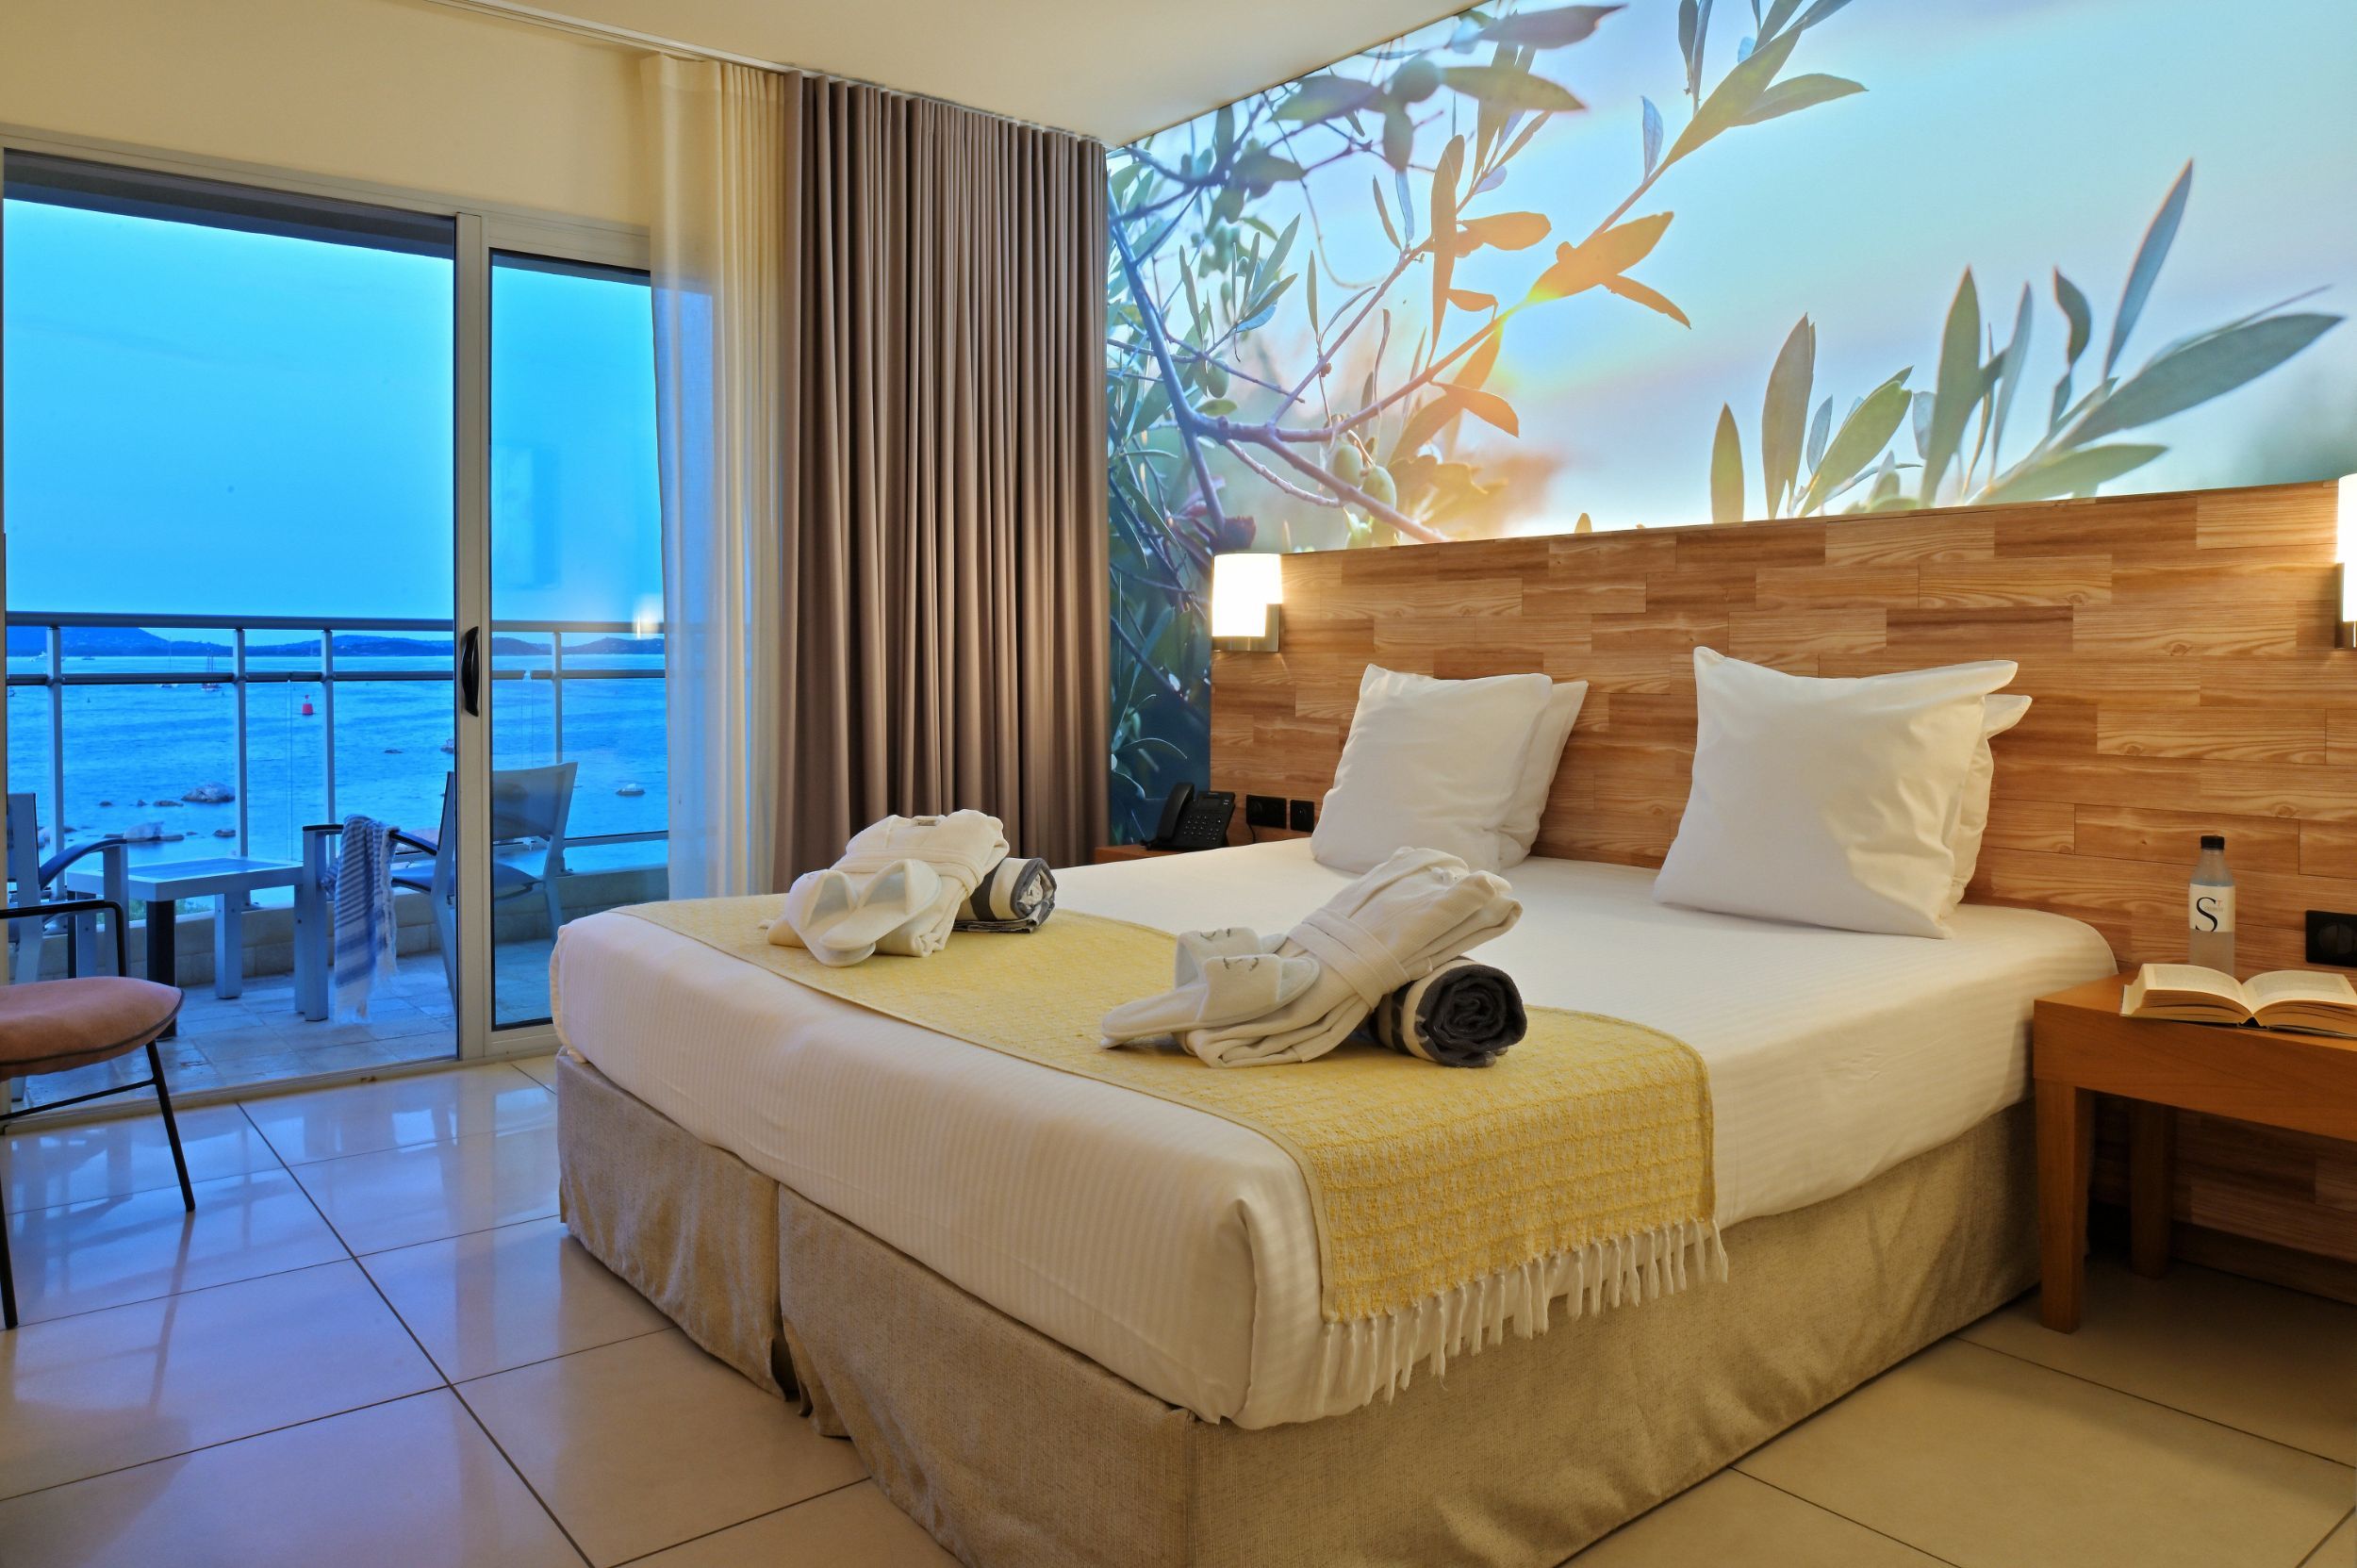 Une chambre d'hôtel avec vue mer | Hôtel Costa Salina